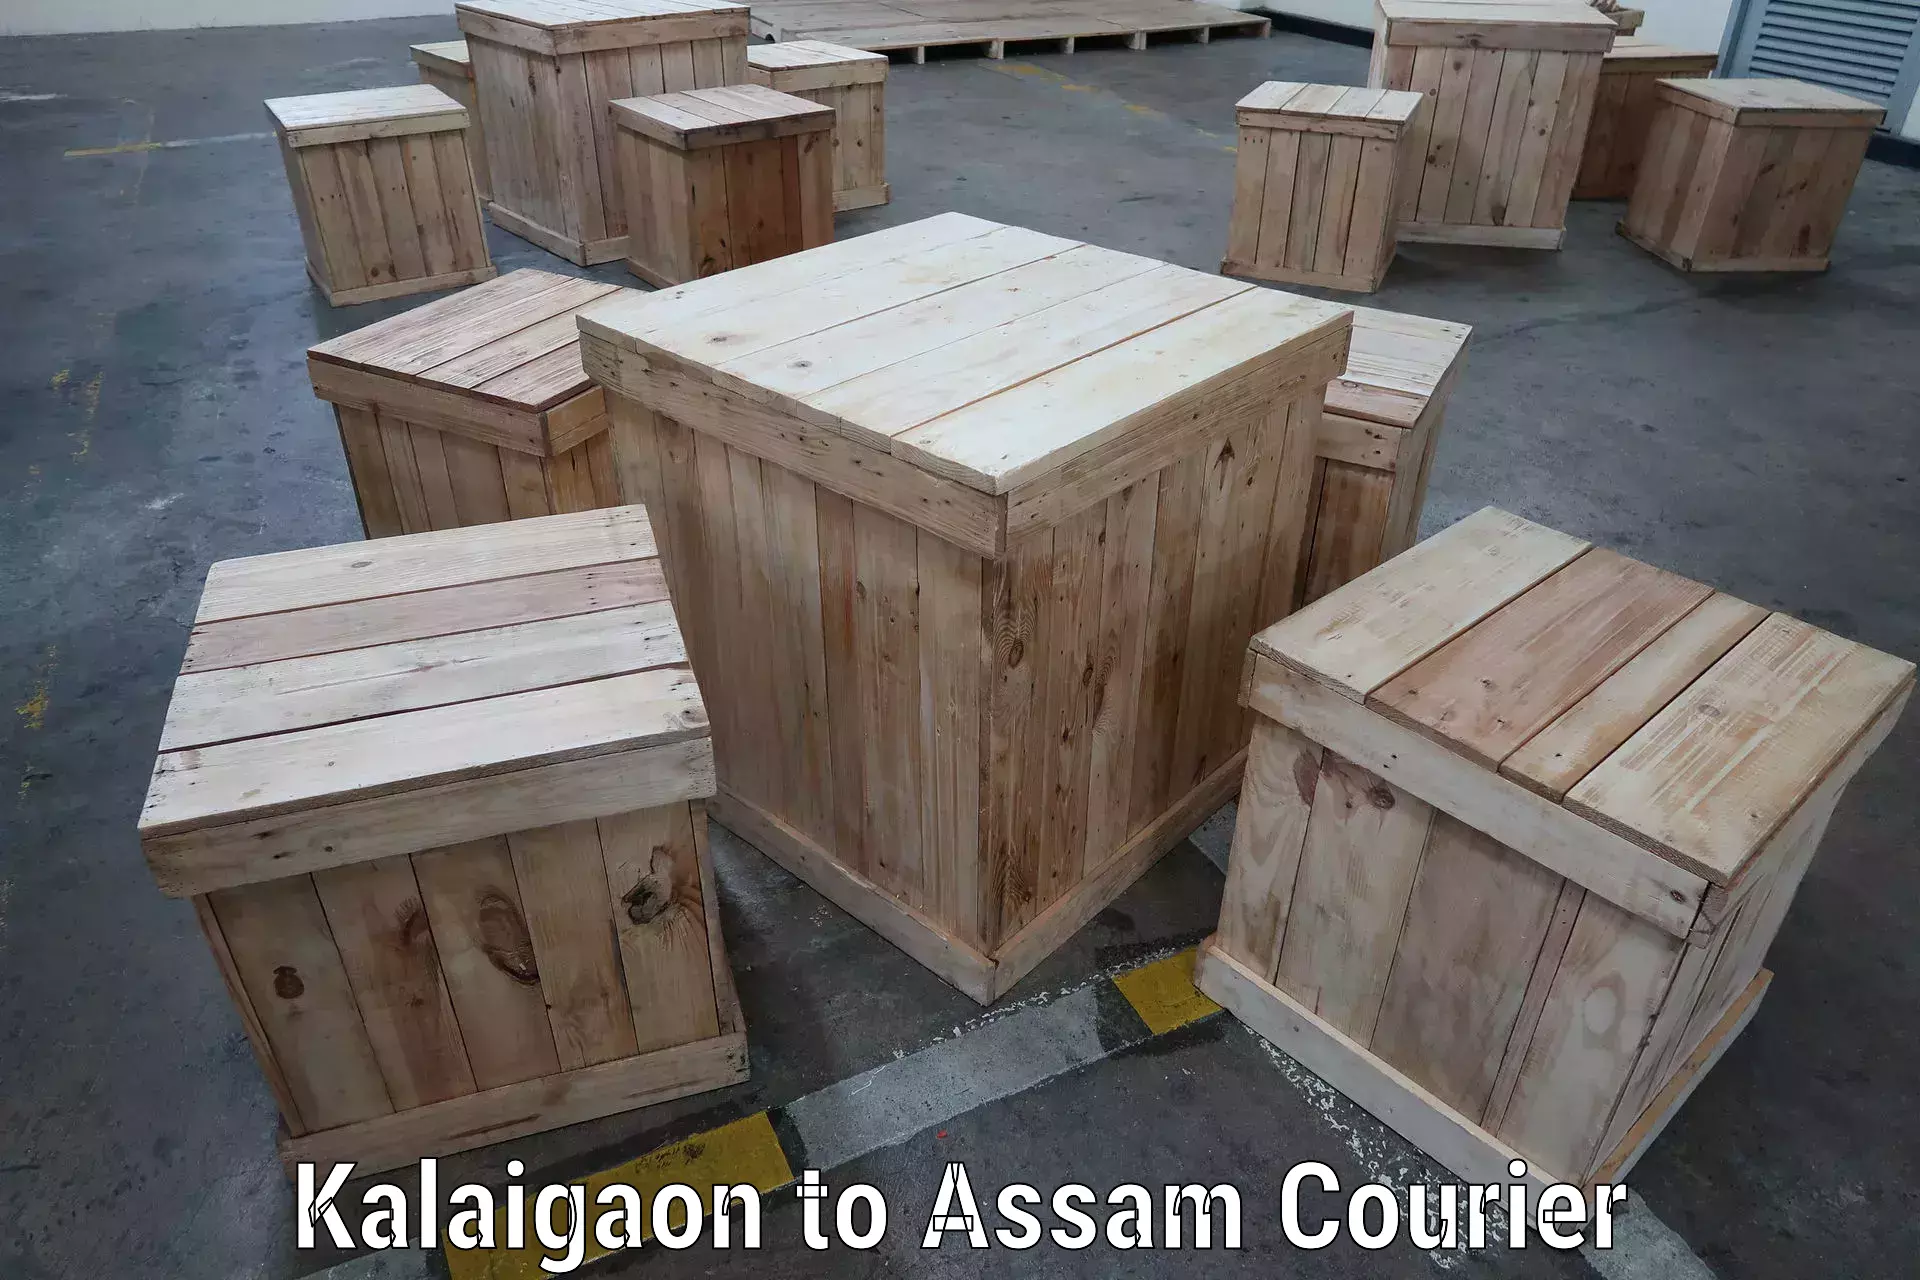 Same-day delivery solutions Kalaigaon to Nagaon